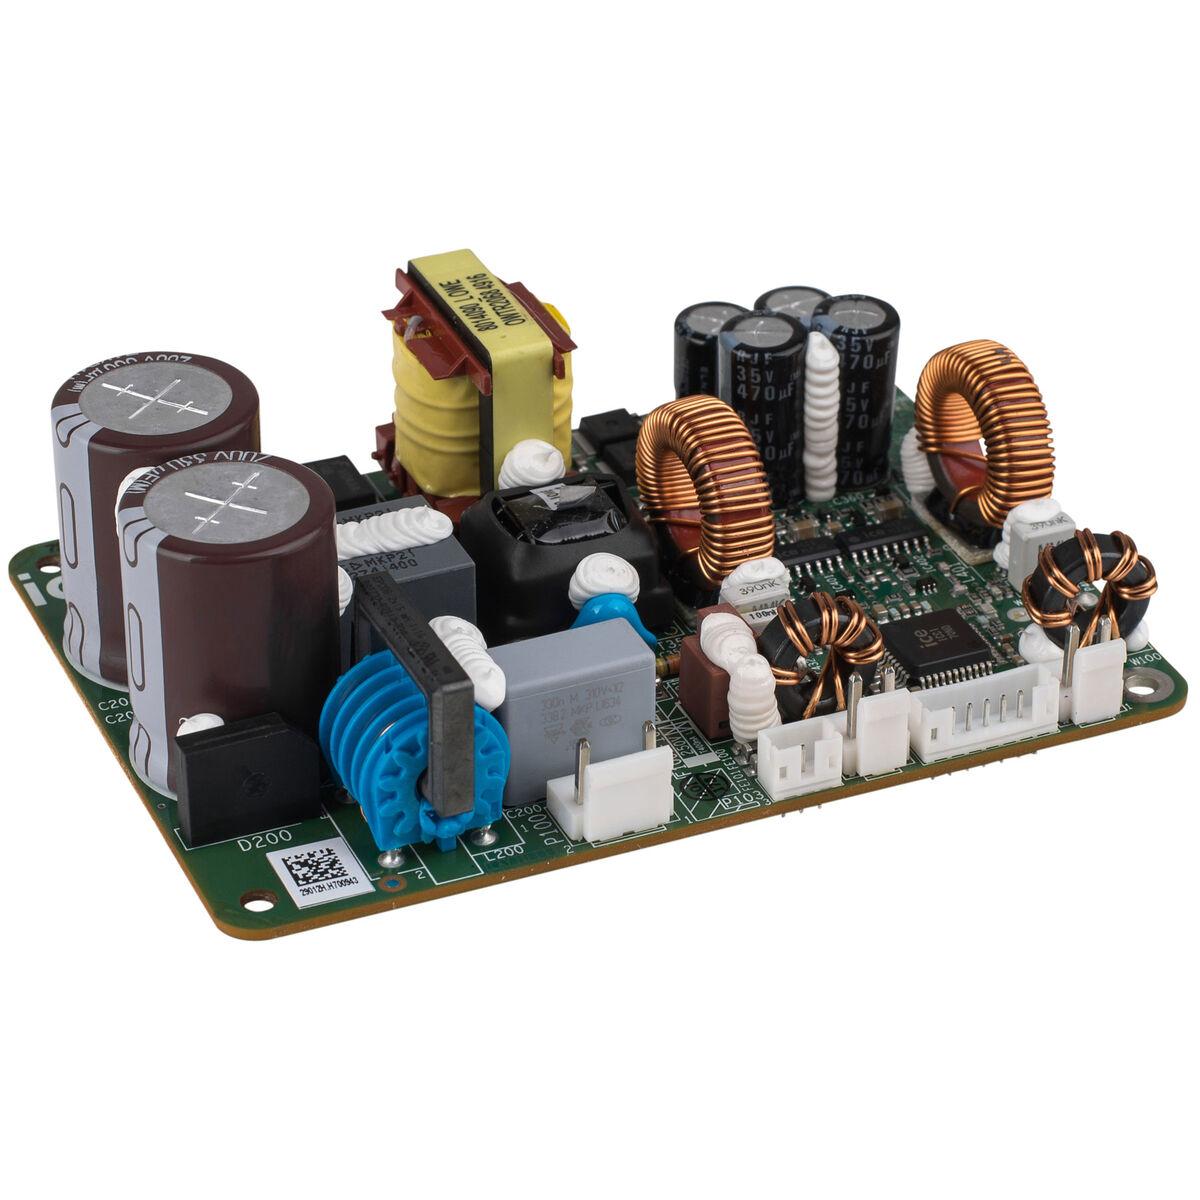 ICE Power 50ASX2 Power Amplifier Bang & Olufsen NEU 